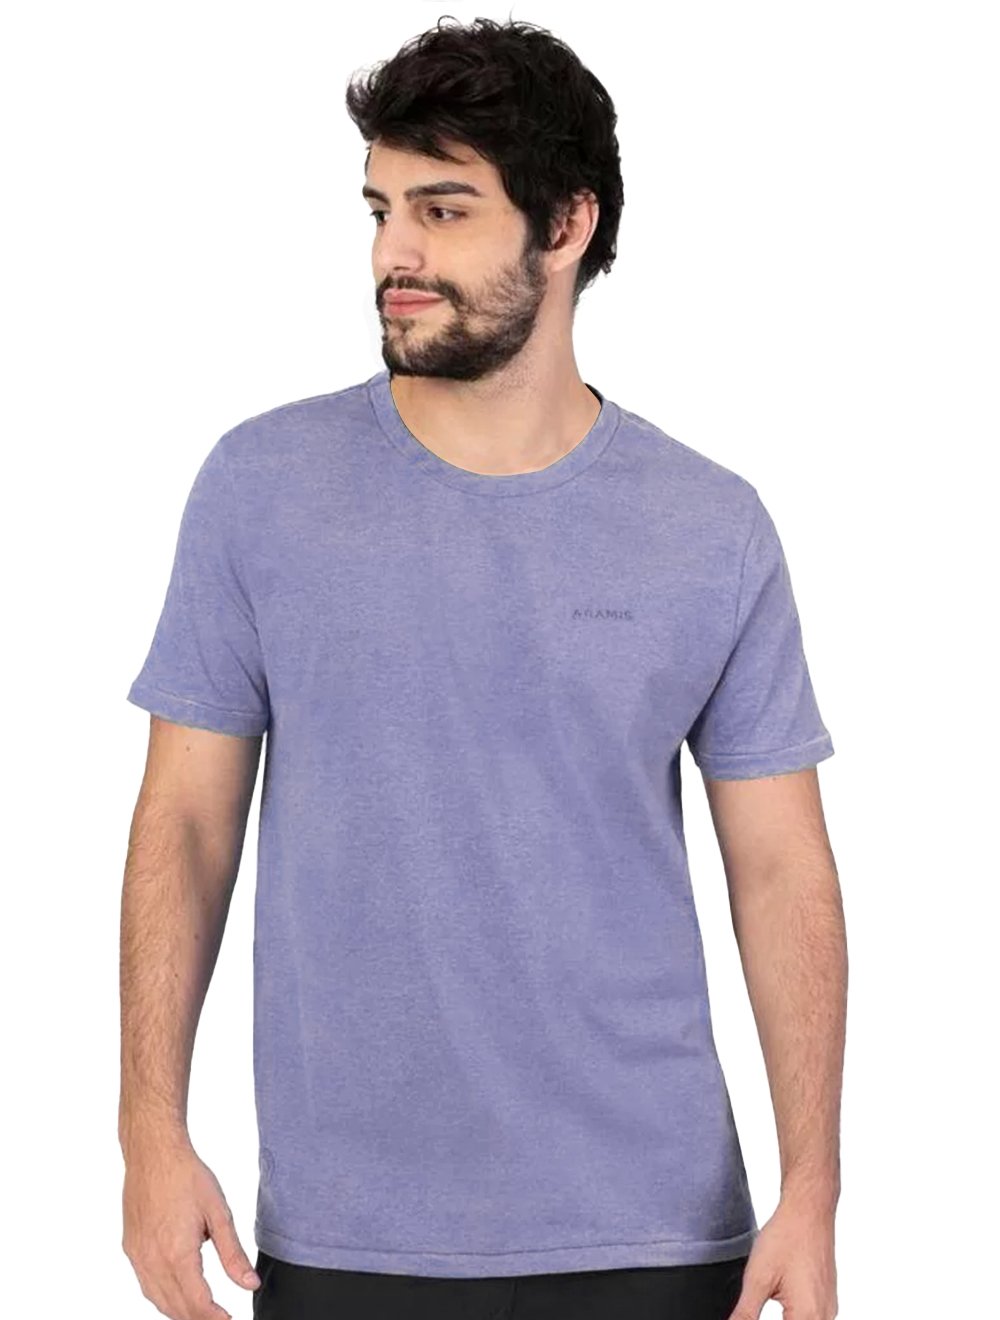 Camiseta Aramis Masculina Tingimento Eco Lisa Azul Mescla